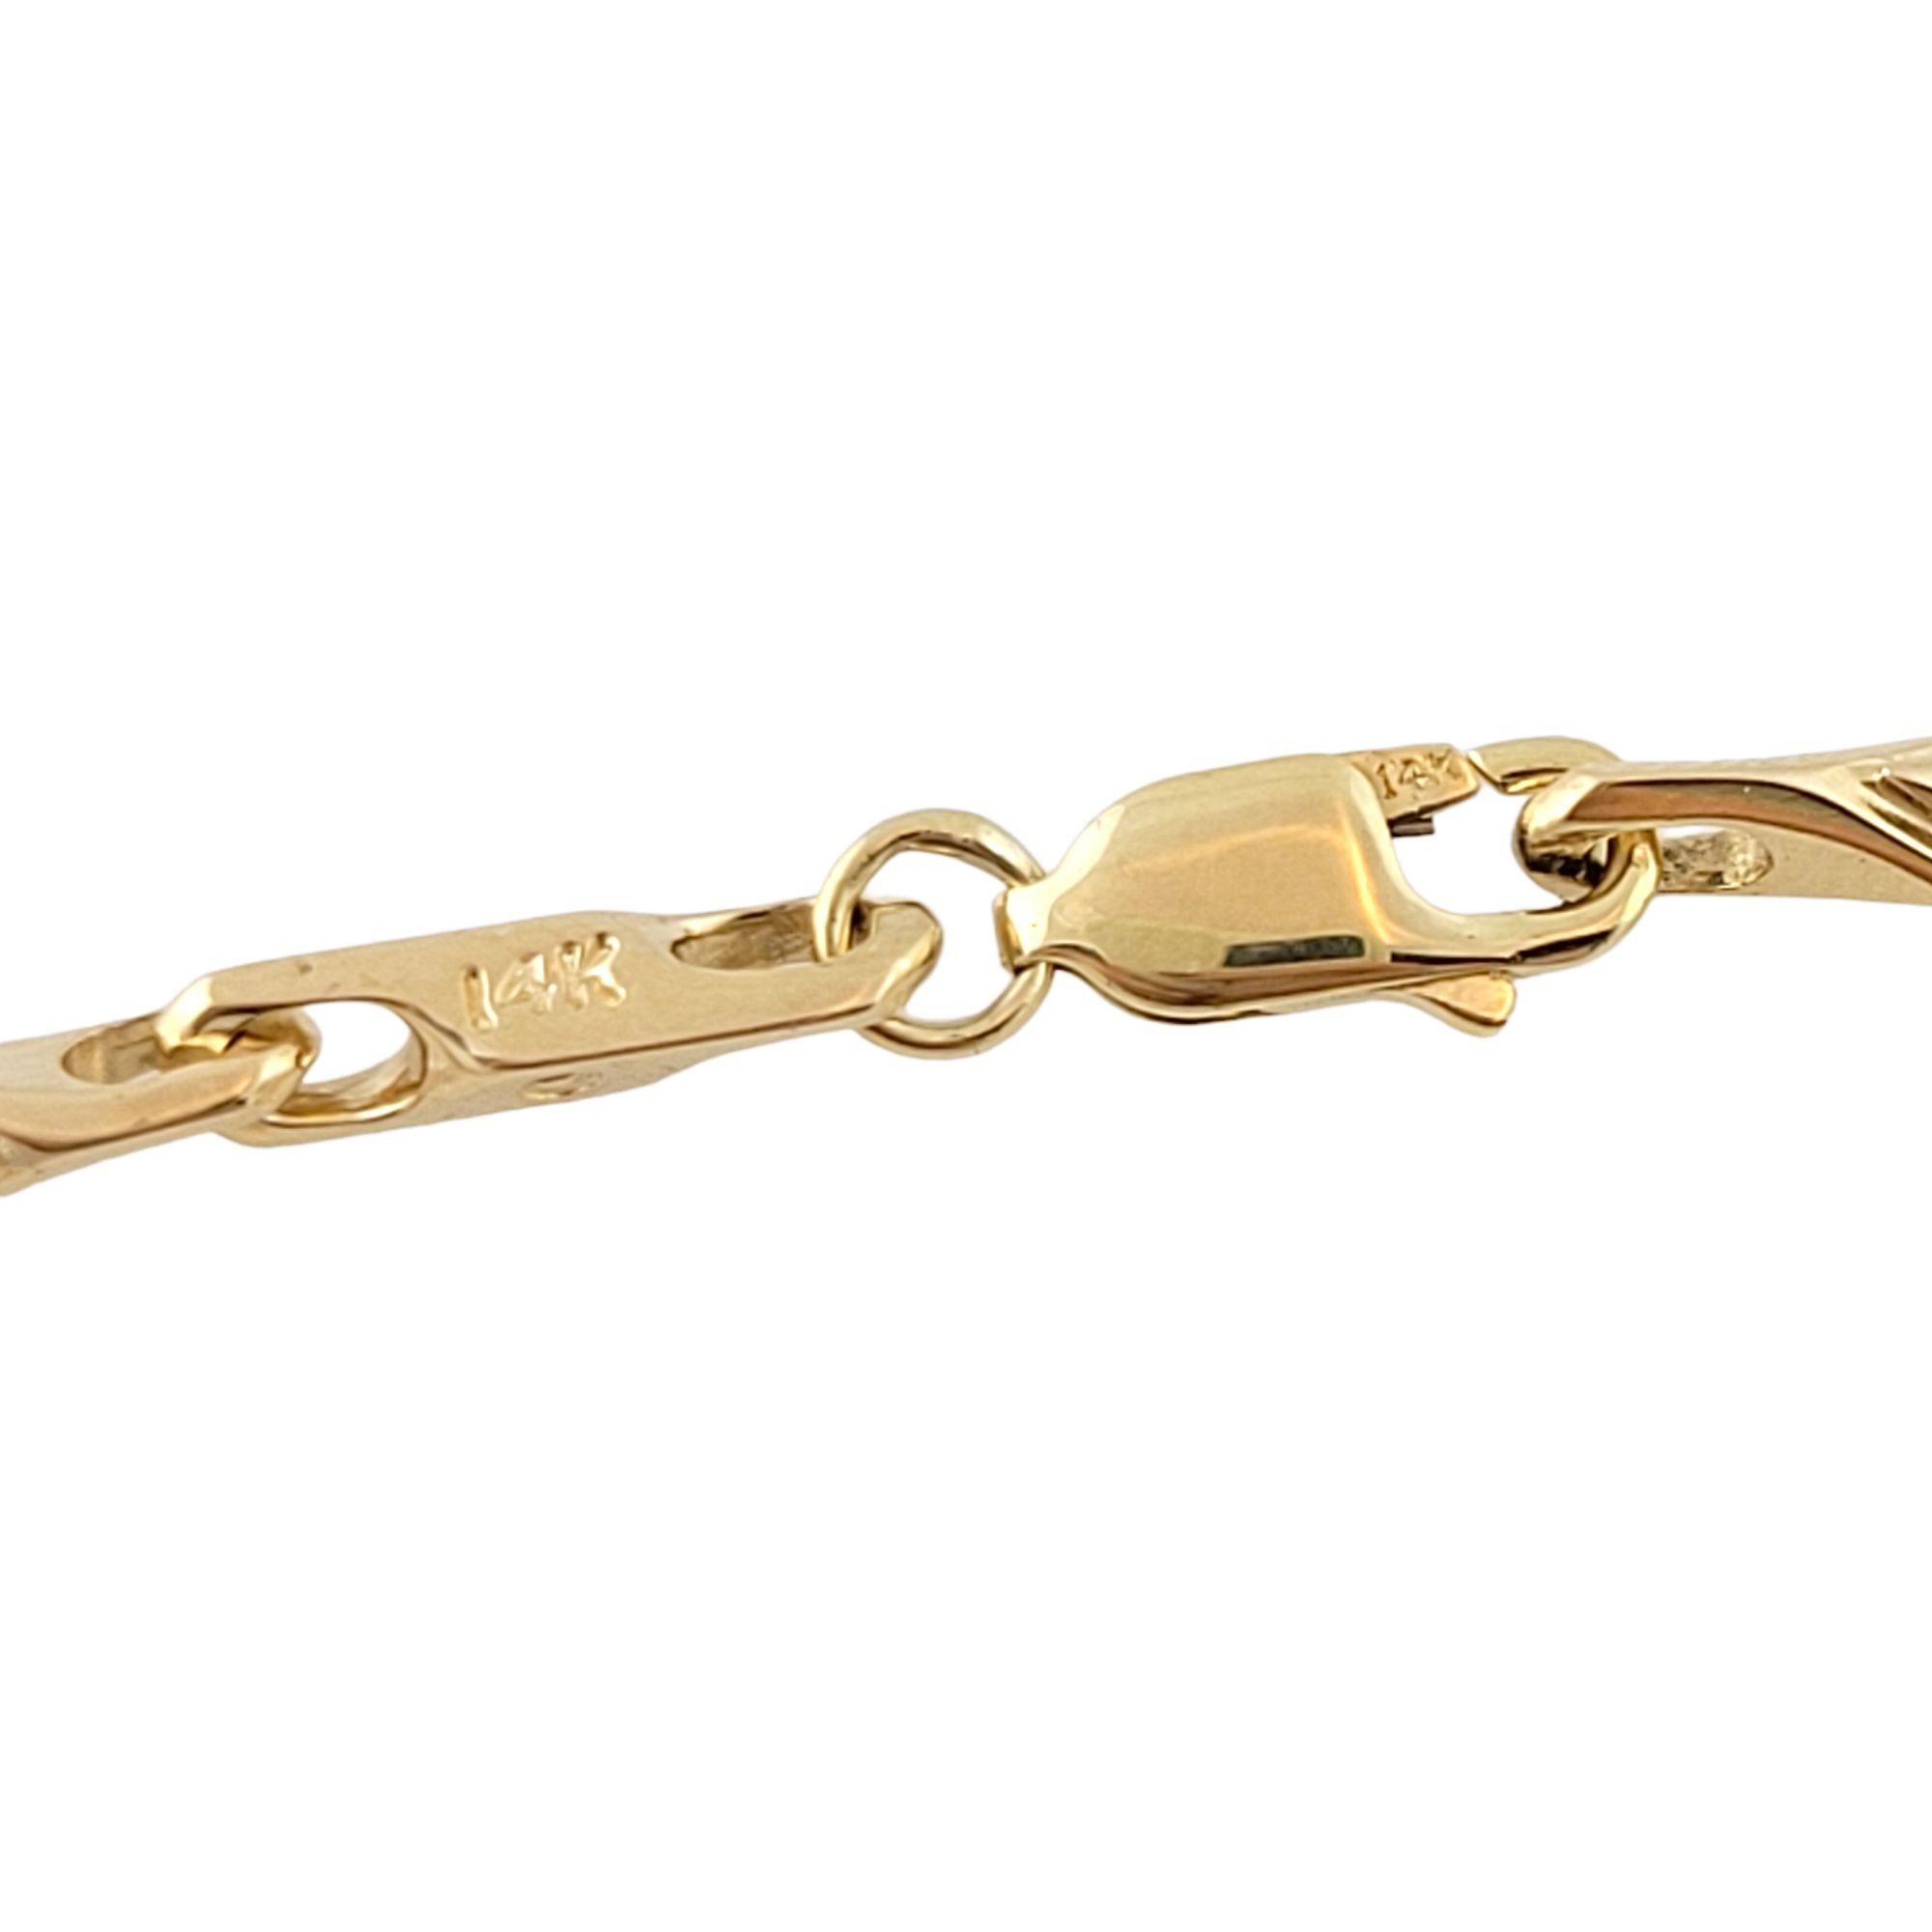 Vintage 14K Or Jaune Bracelet

Ce magnifique bracelet en or jaune 14K serait le cadeau idéal !

Taille : 7